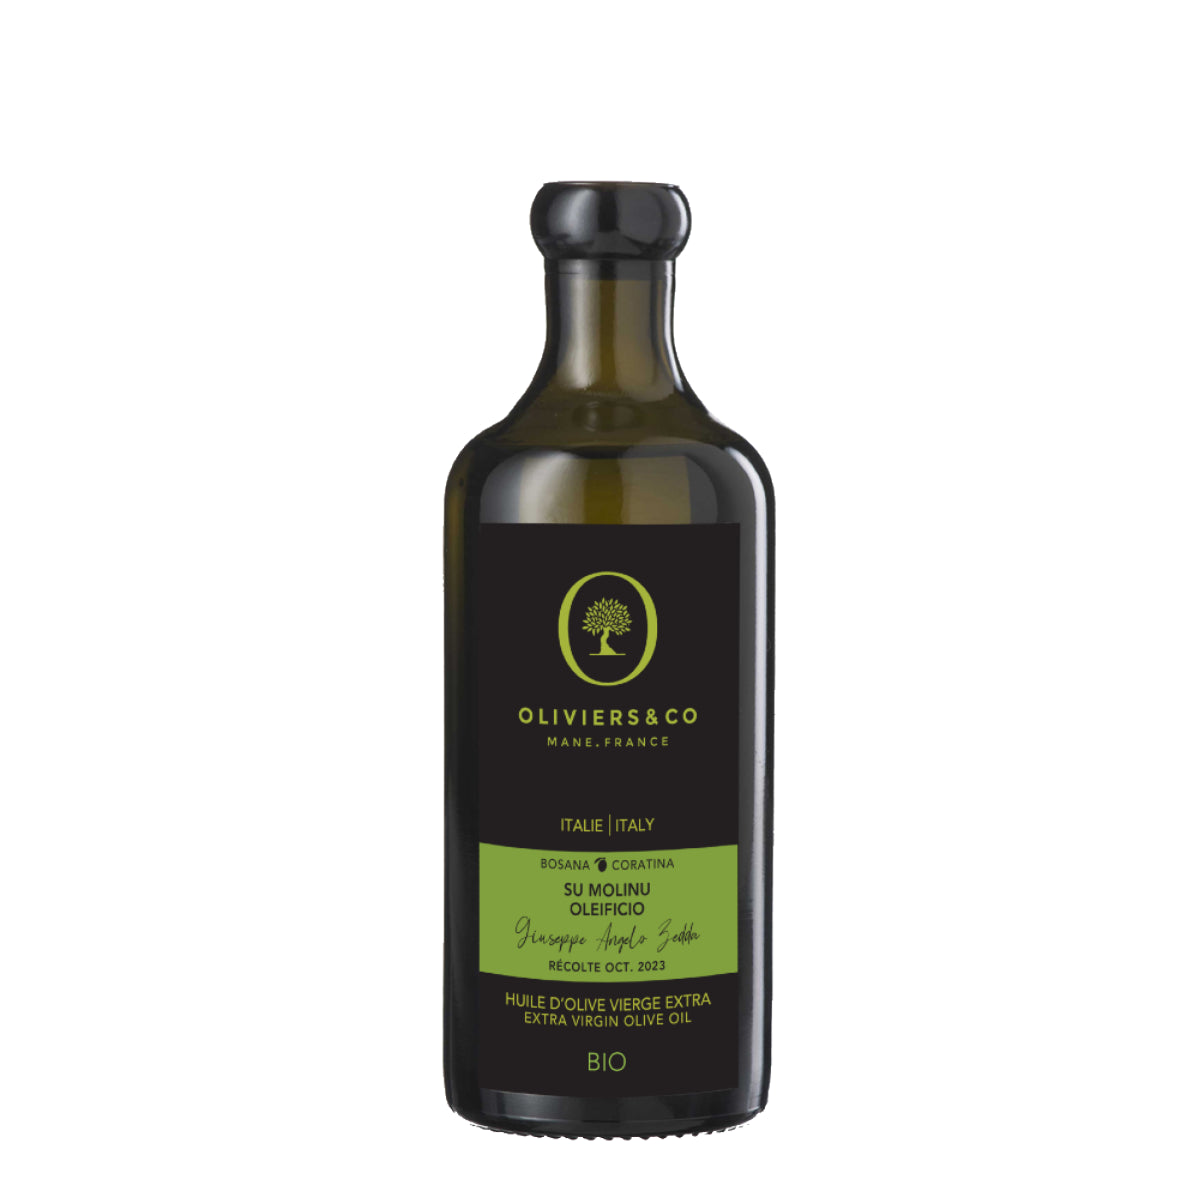 Økologisk Su Molinu Oleificio ekstra jomfru olivenolie 250ml fra Oliviers & Co